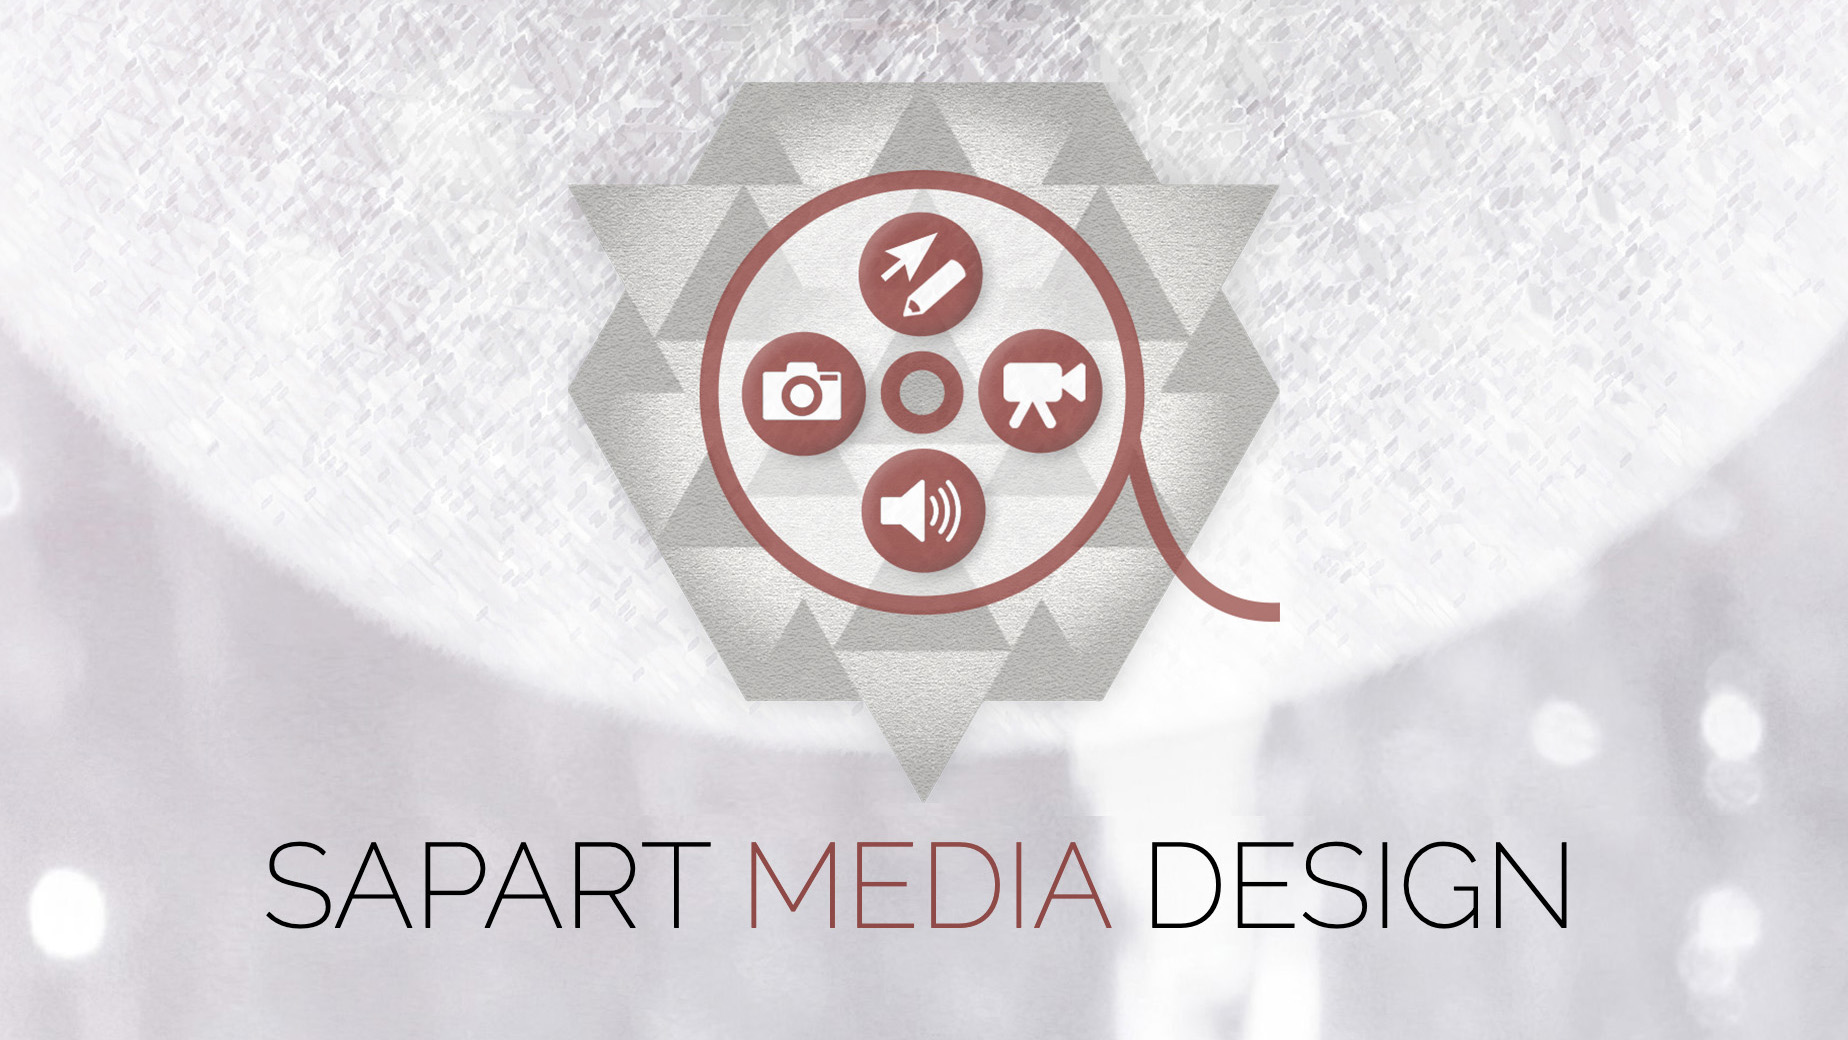 (c) Sapart-mediadesign.com